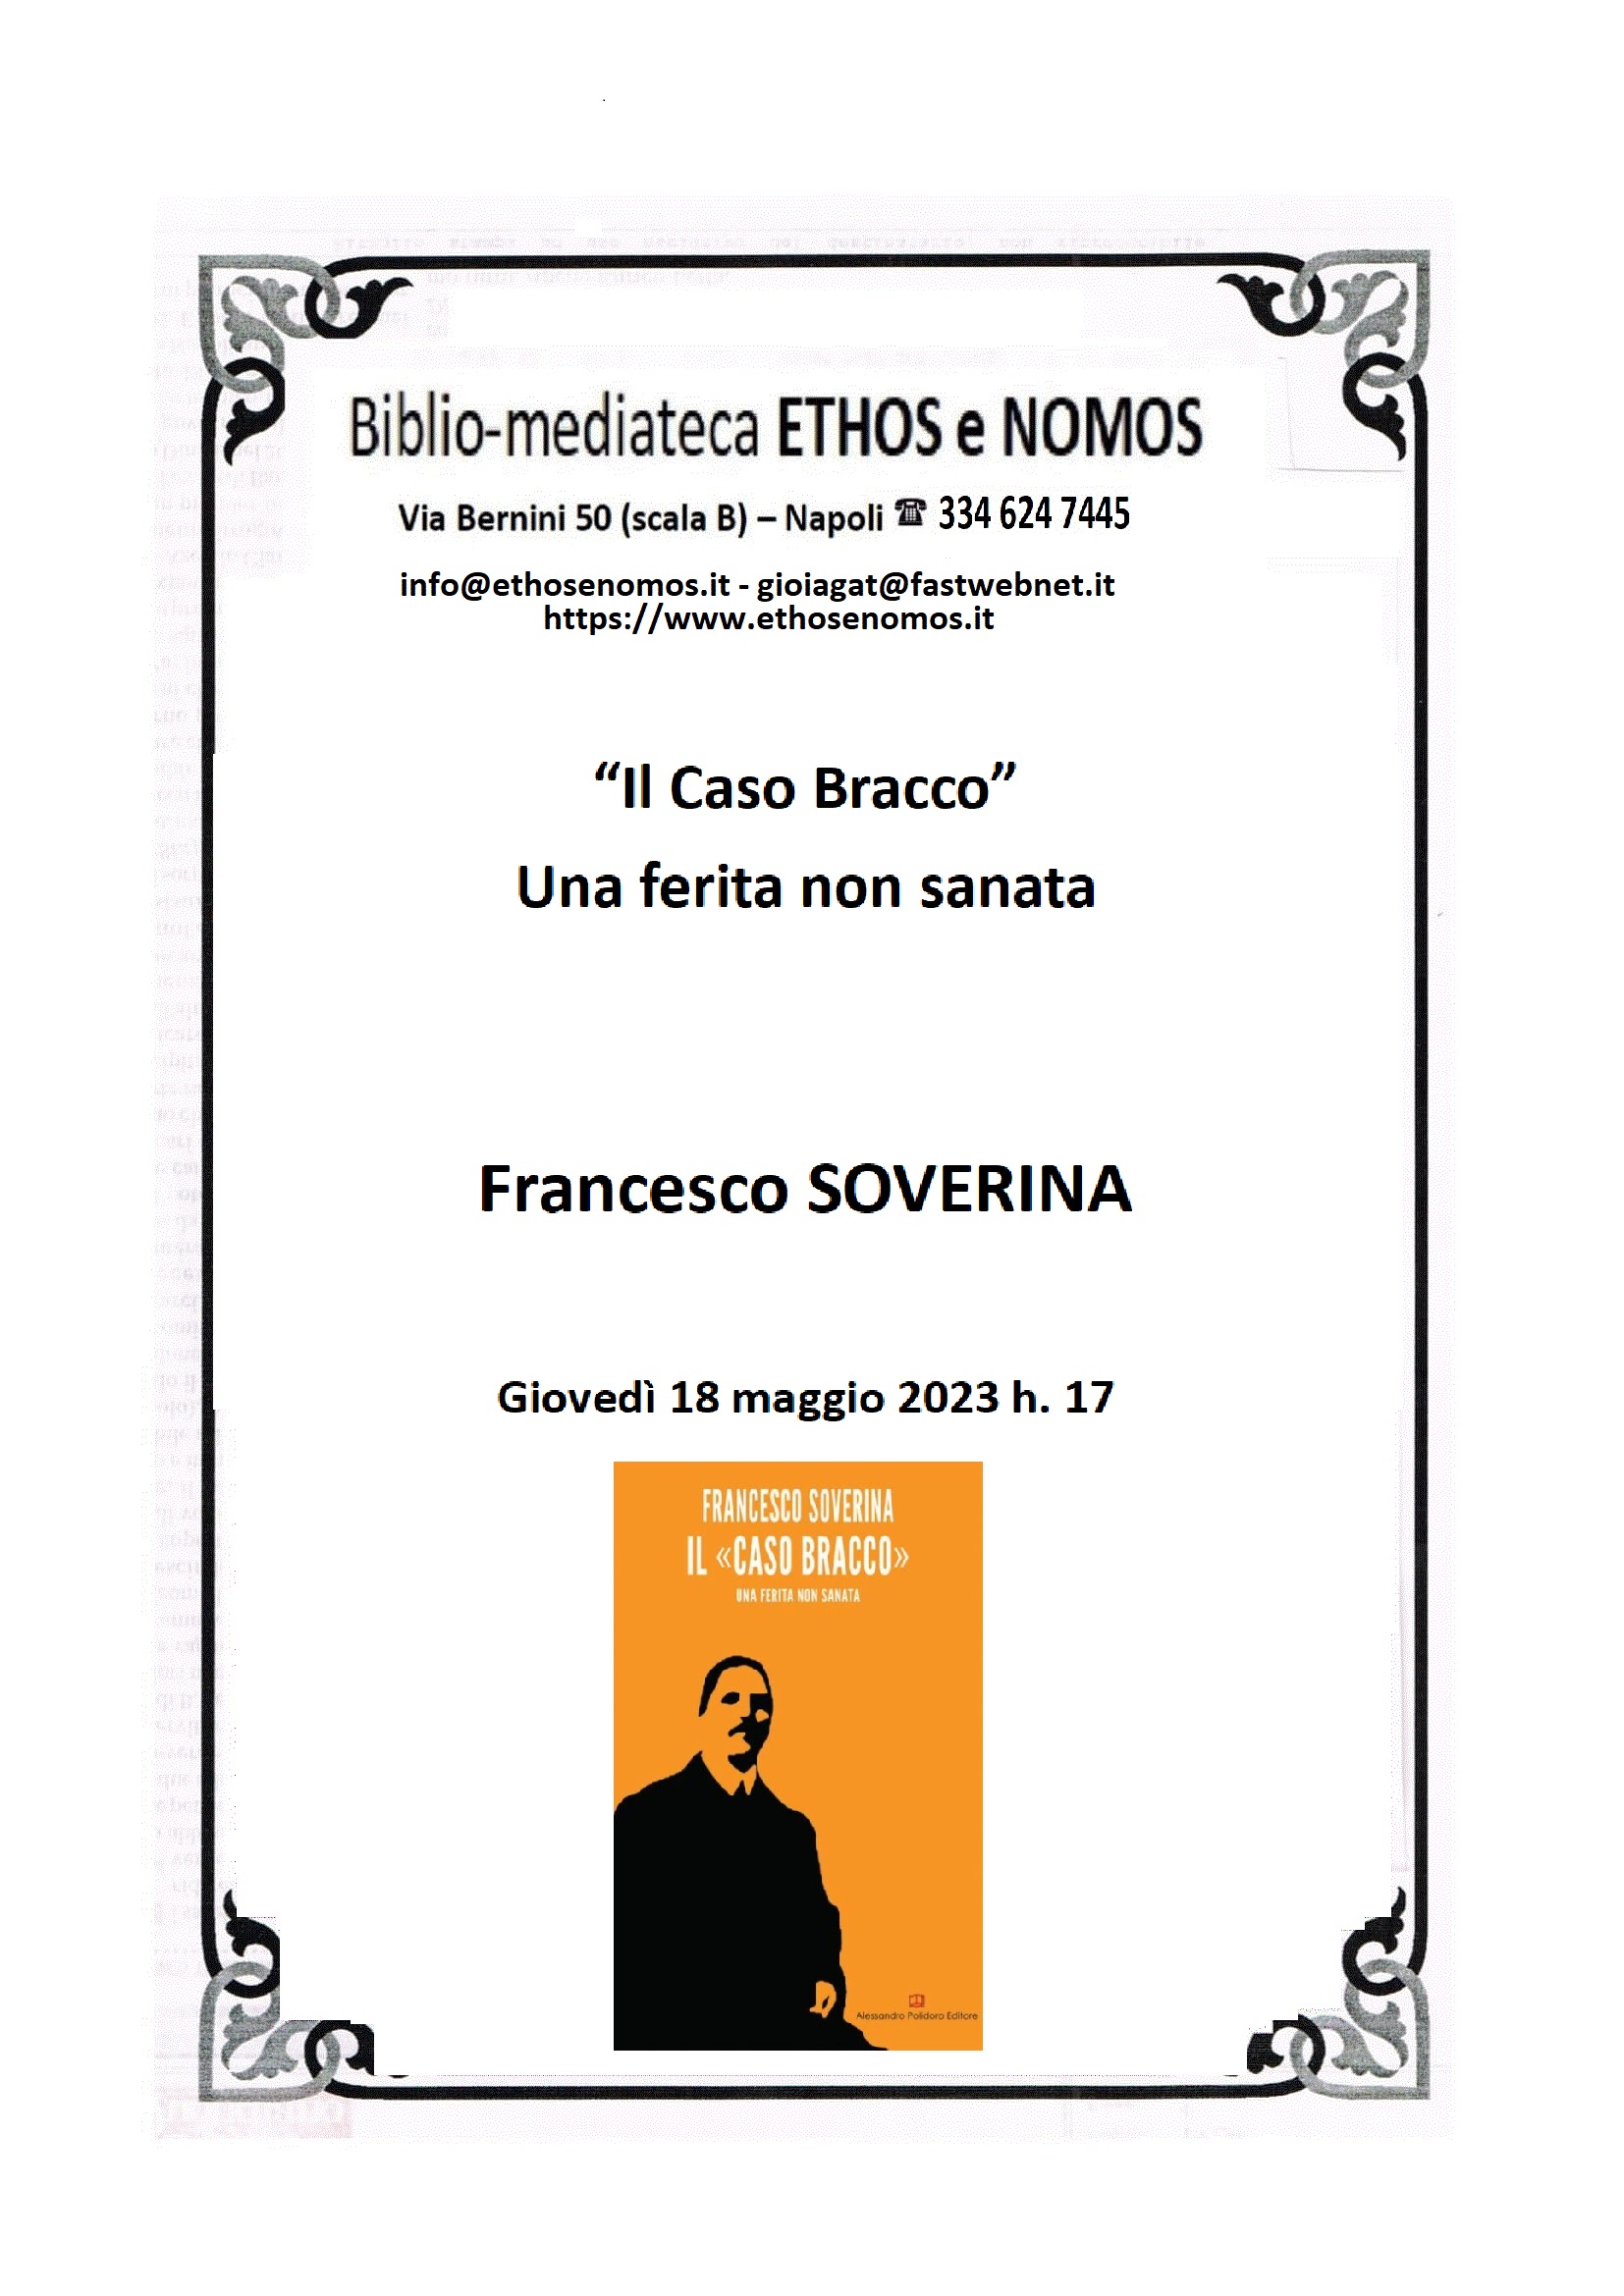 Francesco SOVERINA - "Il caso Bracco". Una ferita non sanata